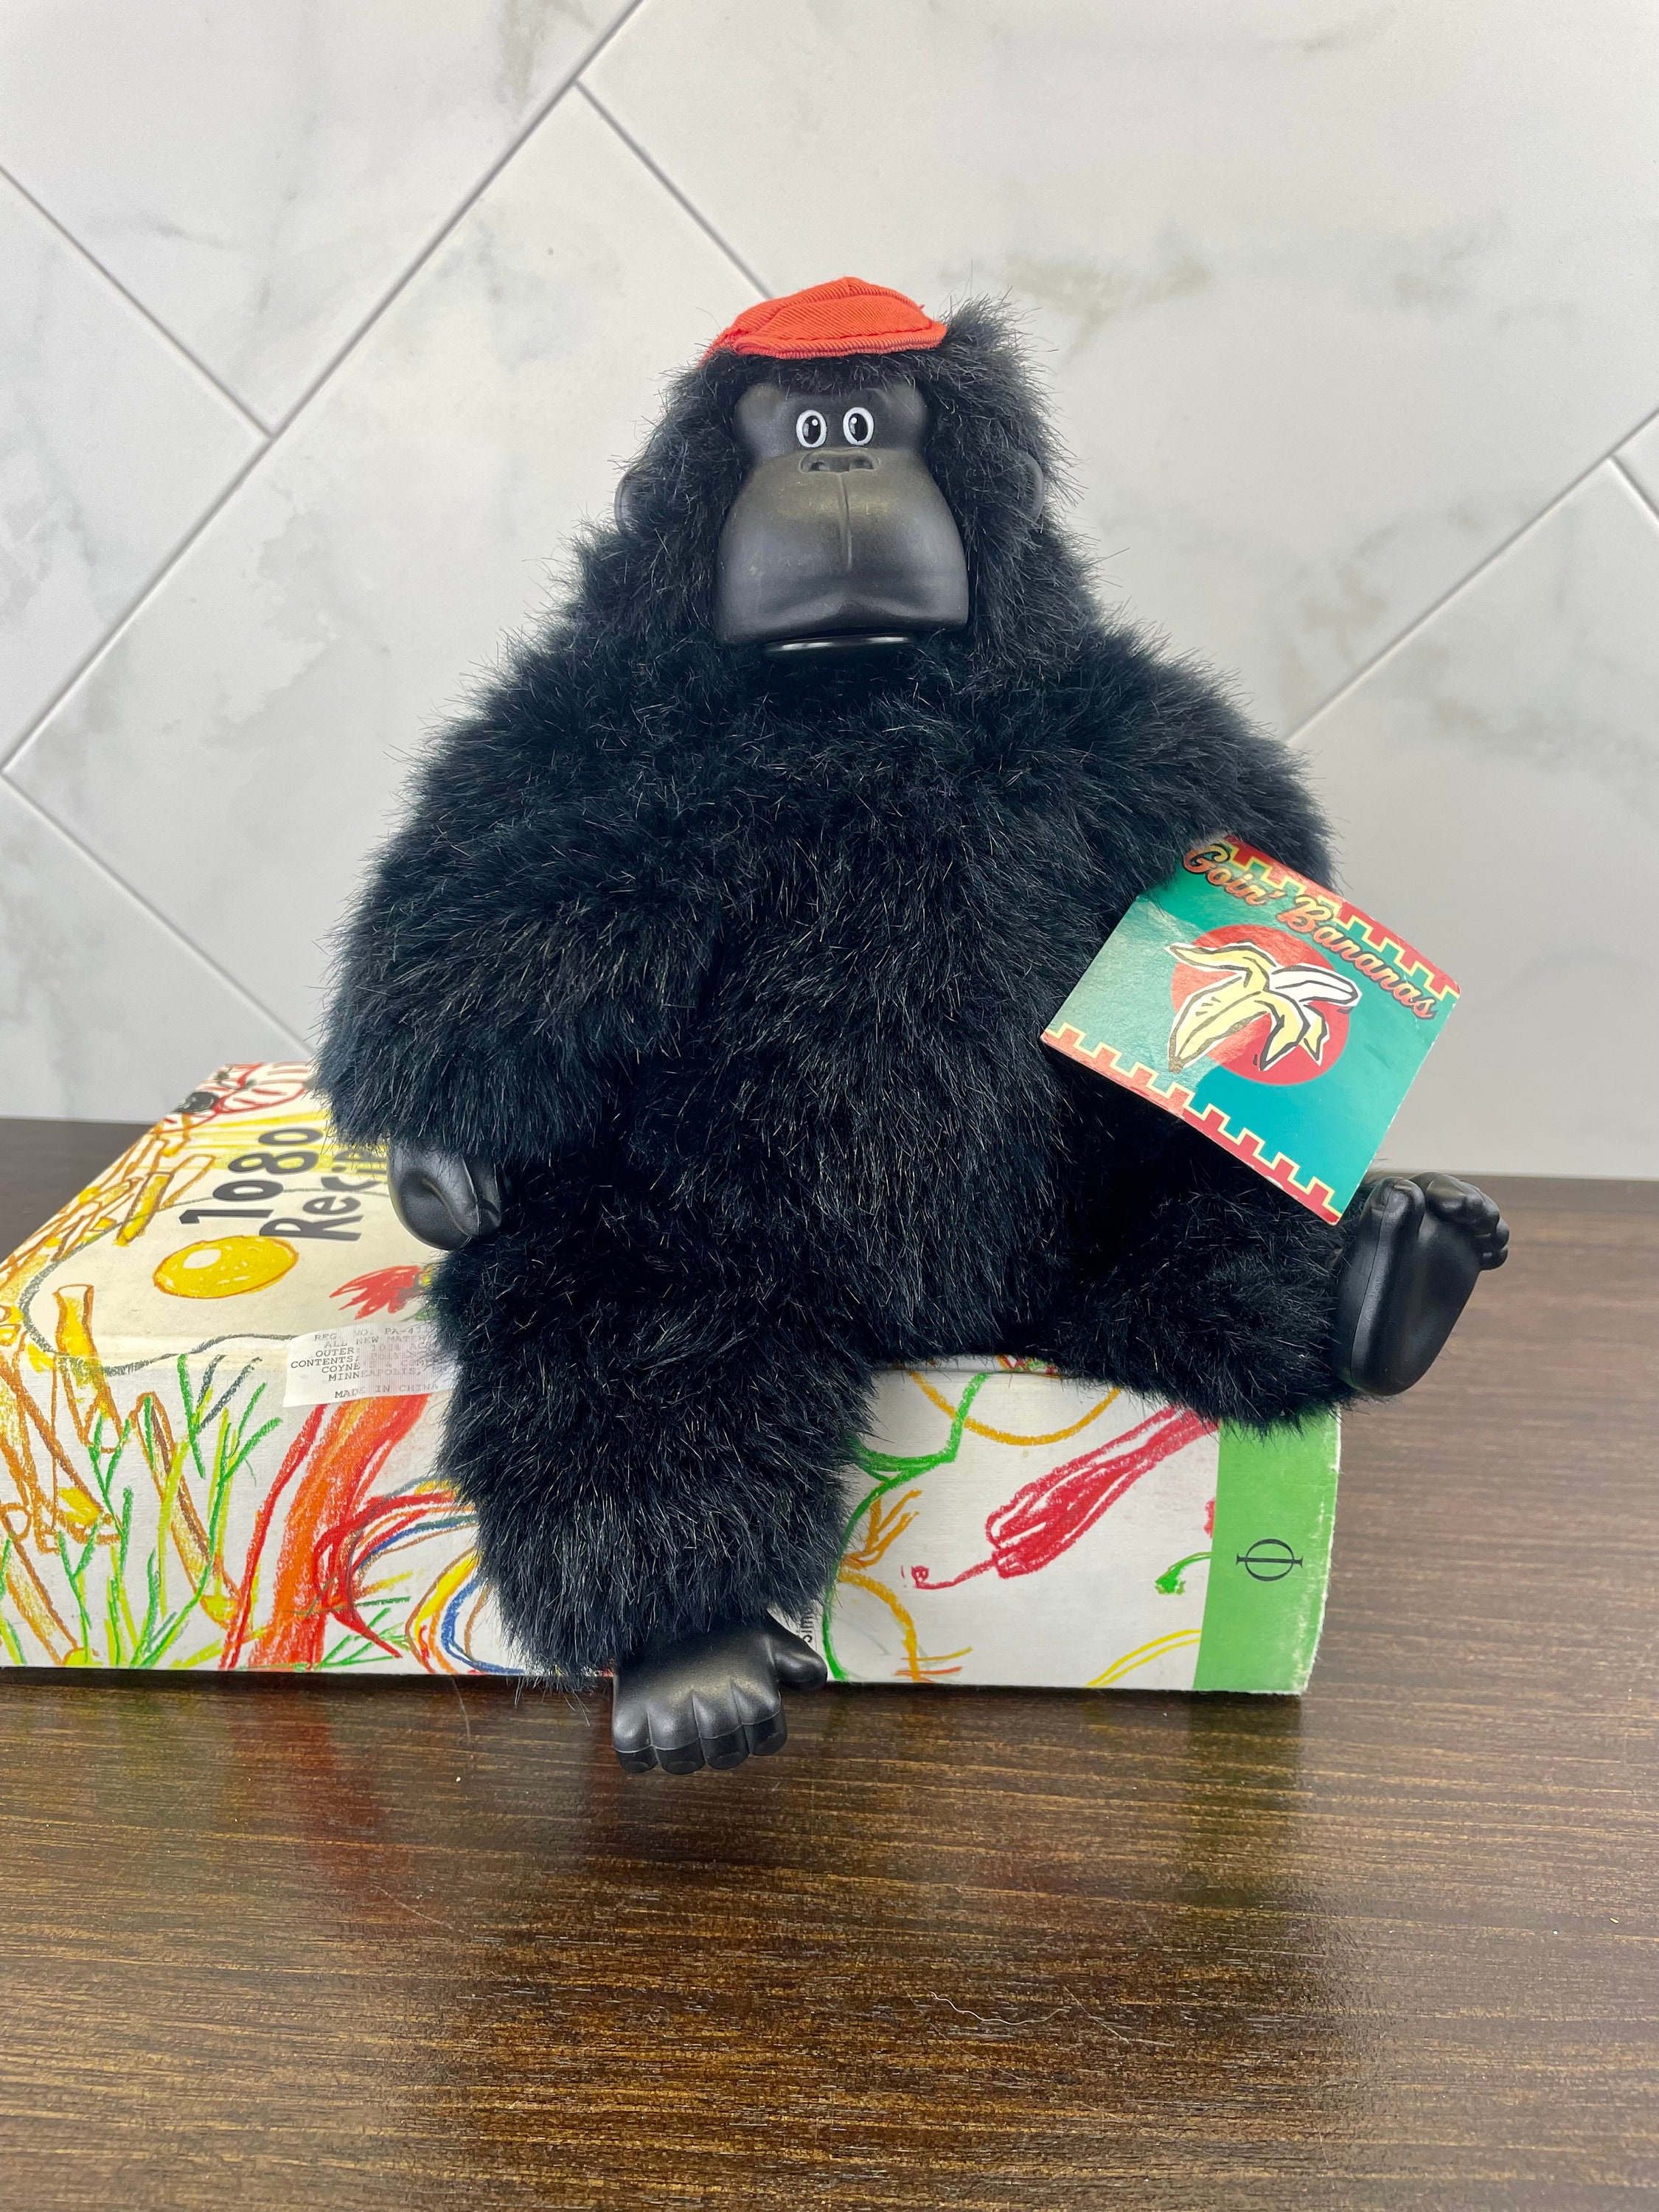  zkqeuak Gorilla Tag Plush Gorilla tagsStuffed Animal